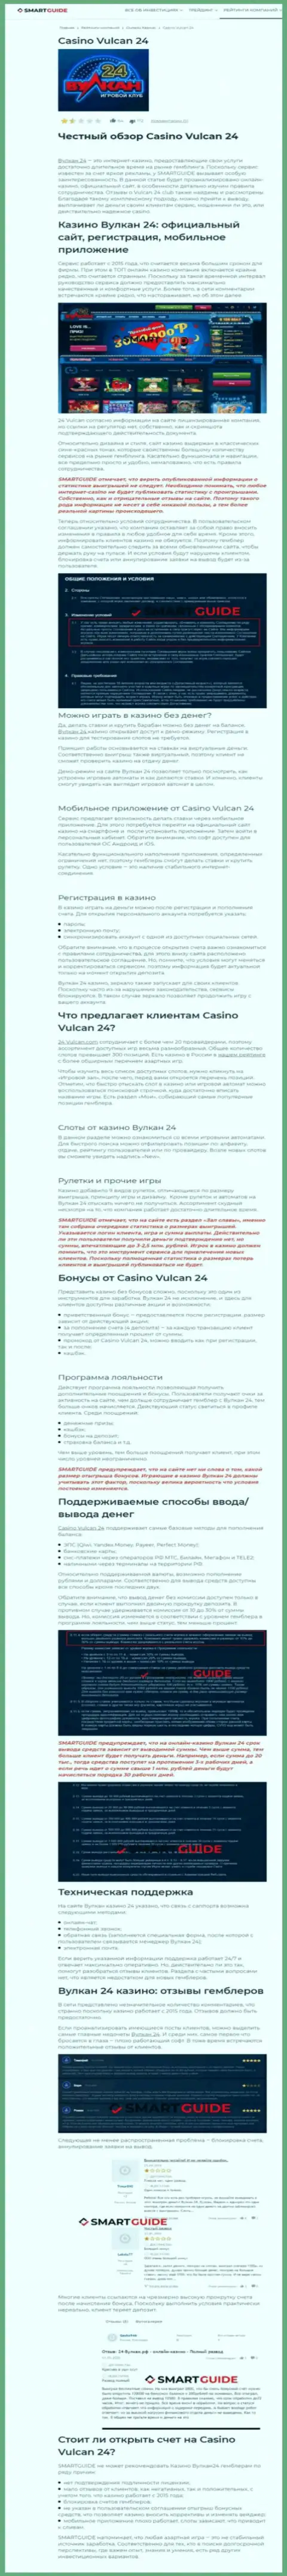 Вулкан-24 Ком - это компания, зарабатывающая на сливе вложенных денежных средств реальных клиентов (обзор мошенничества)